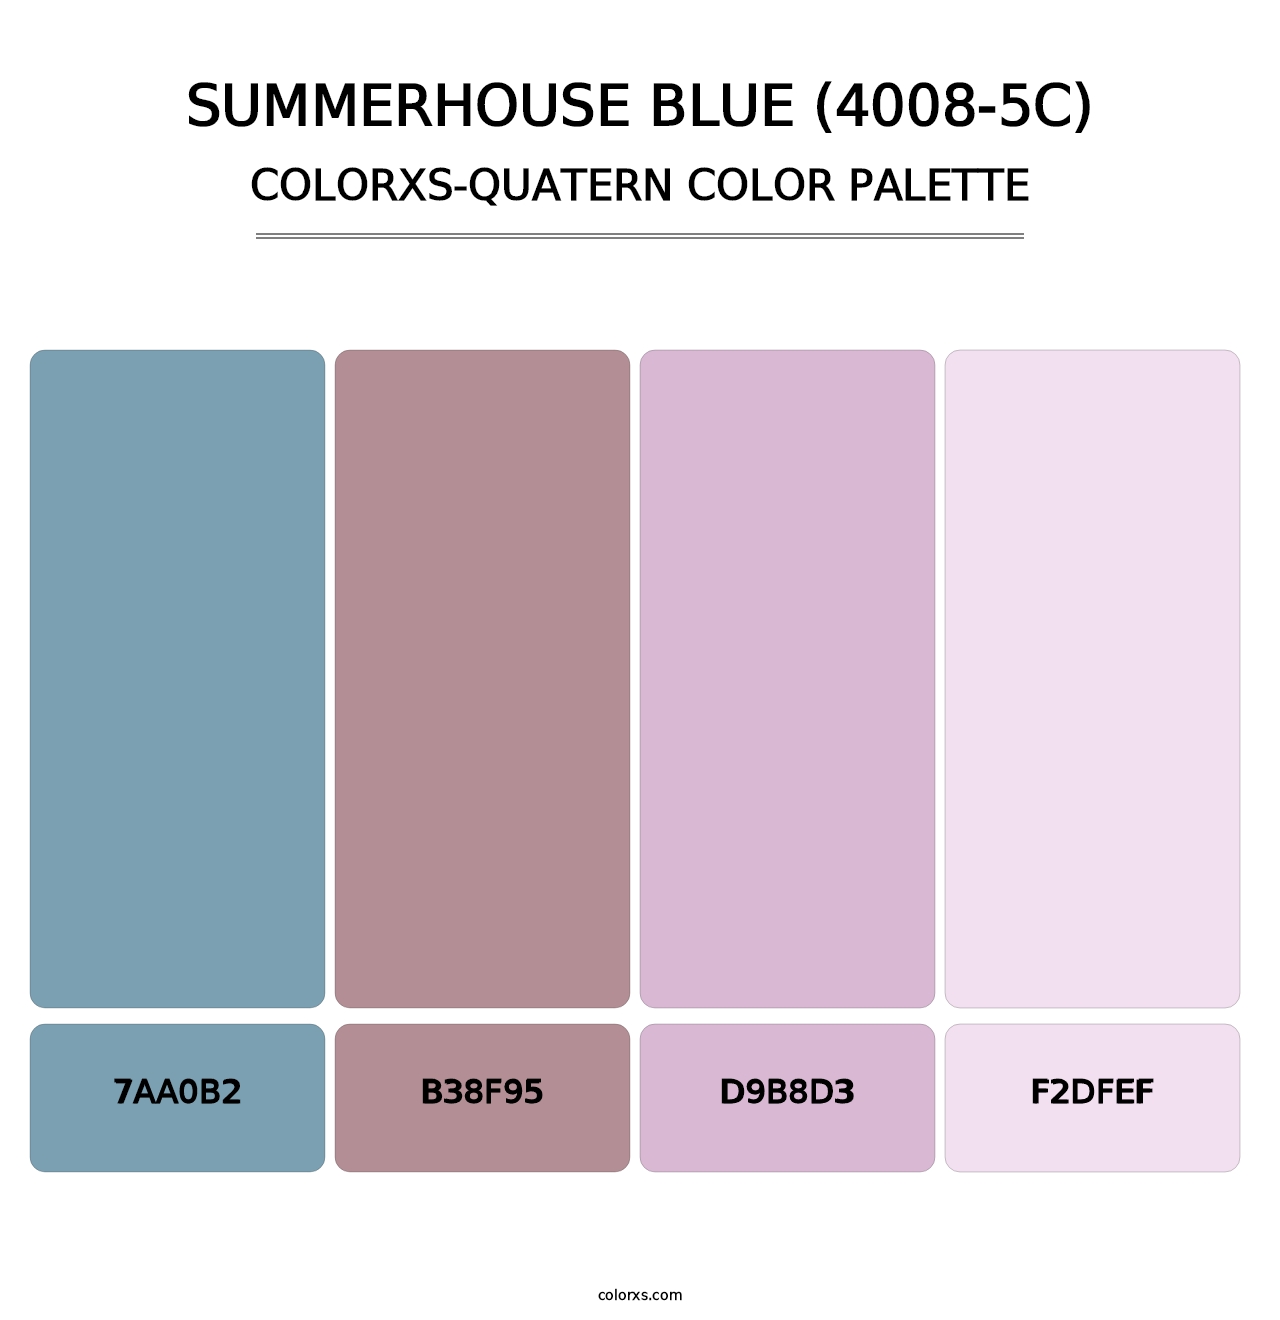 Summerhouse Blue (4008-5C) - Colorxs Quatern Palette